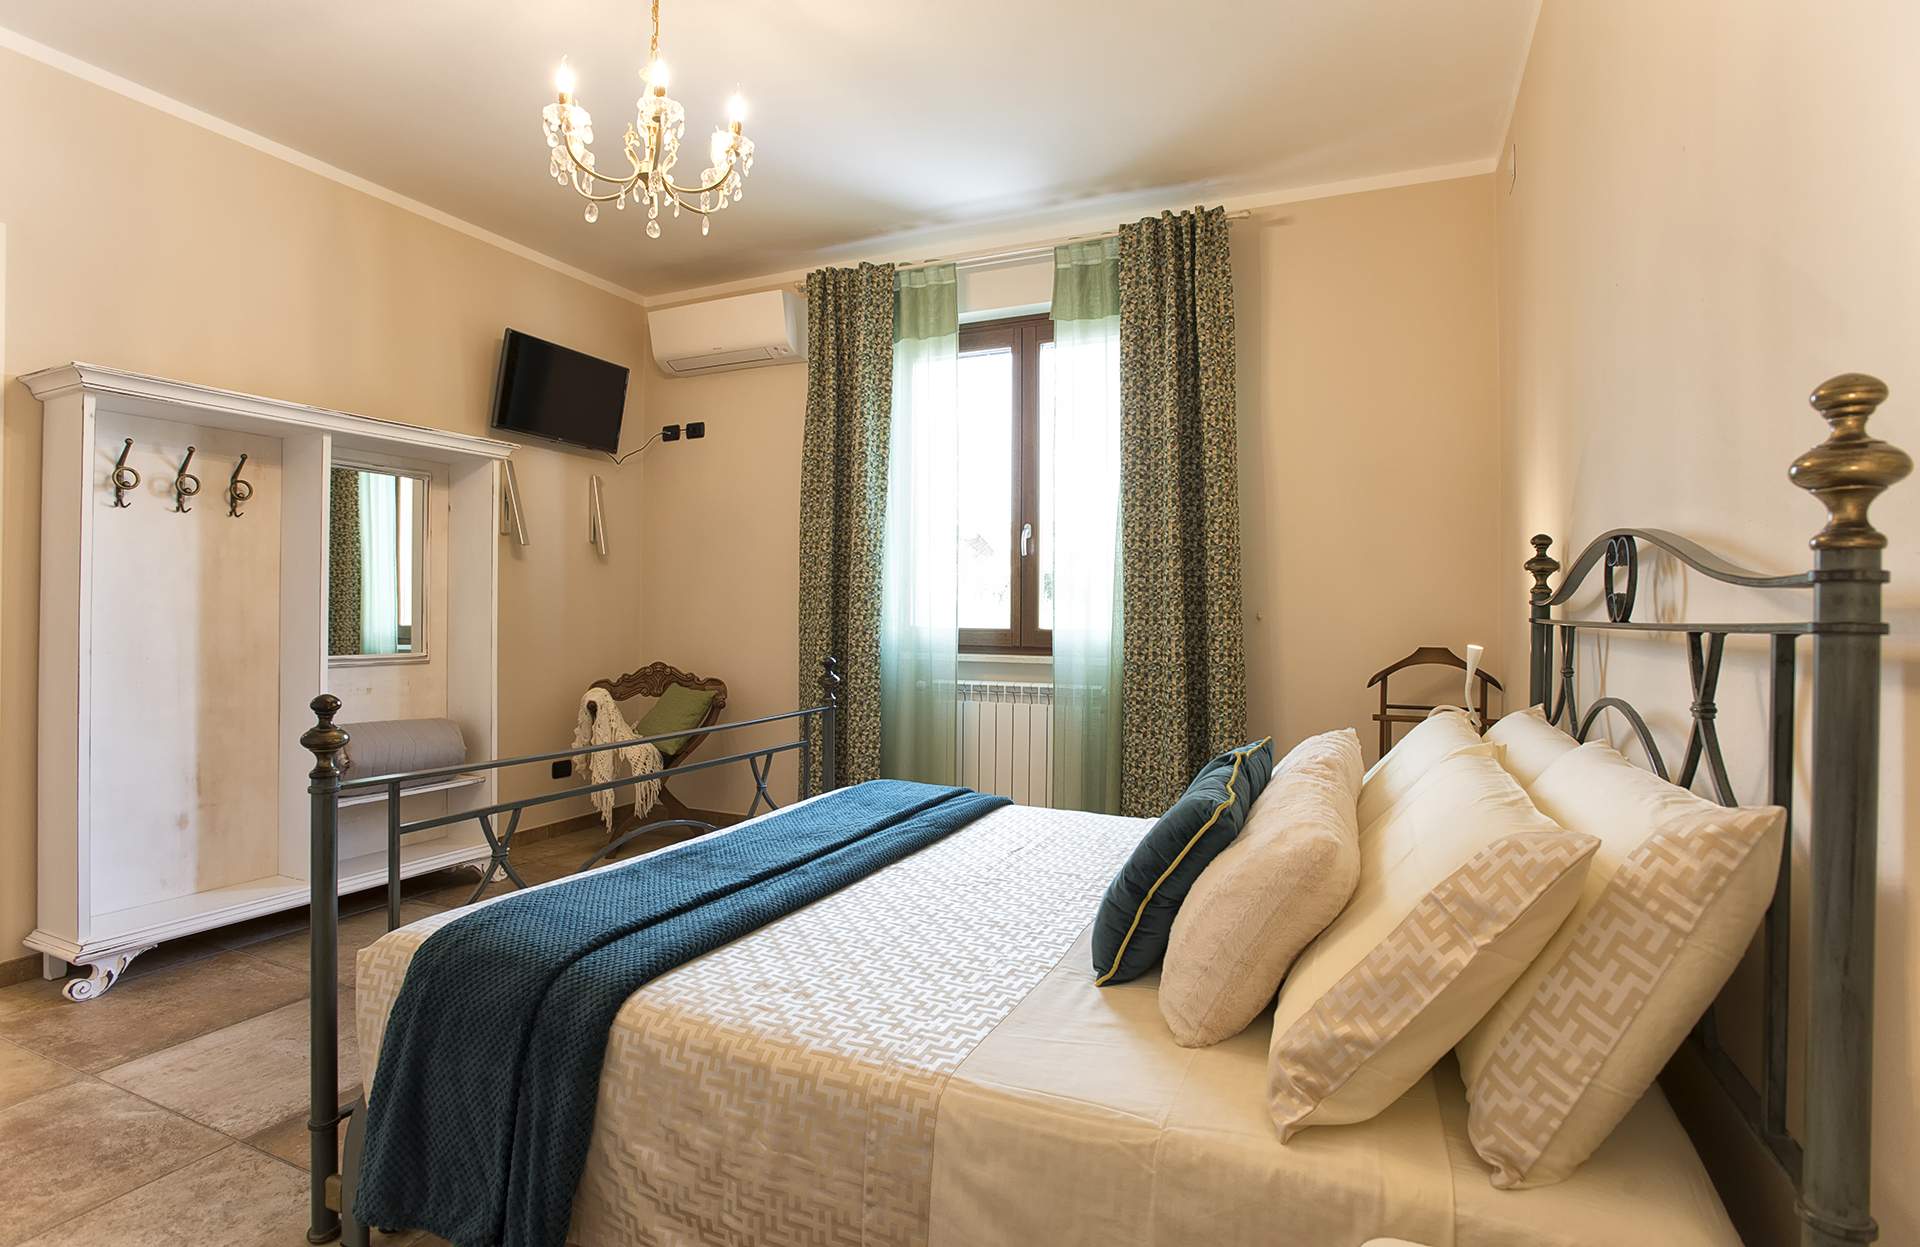 Villa Malvasio bed and breakfast a Sassari: il luogo ideale per una vacanza in Sardegna